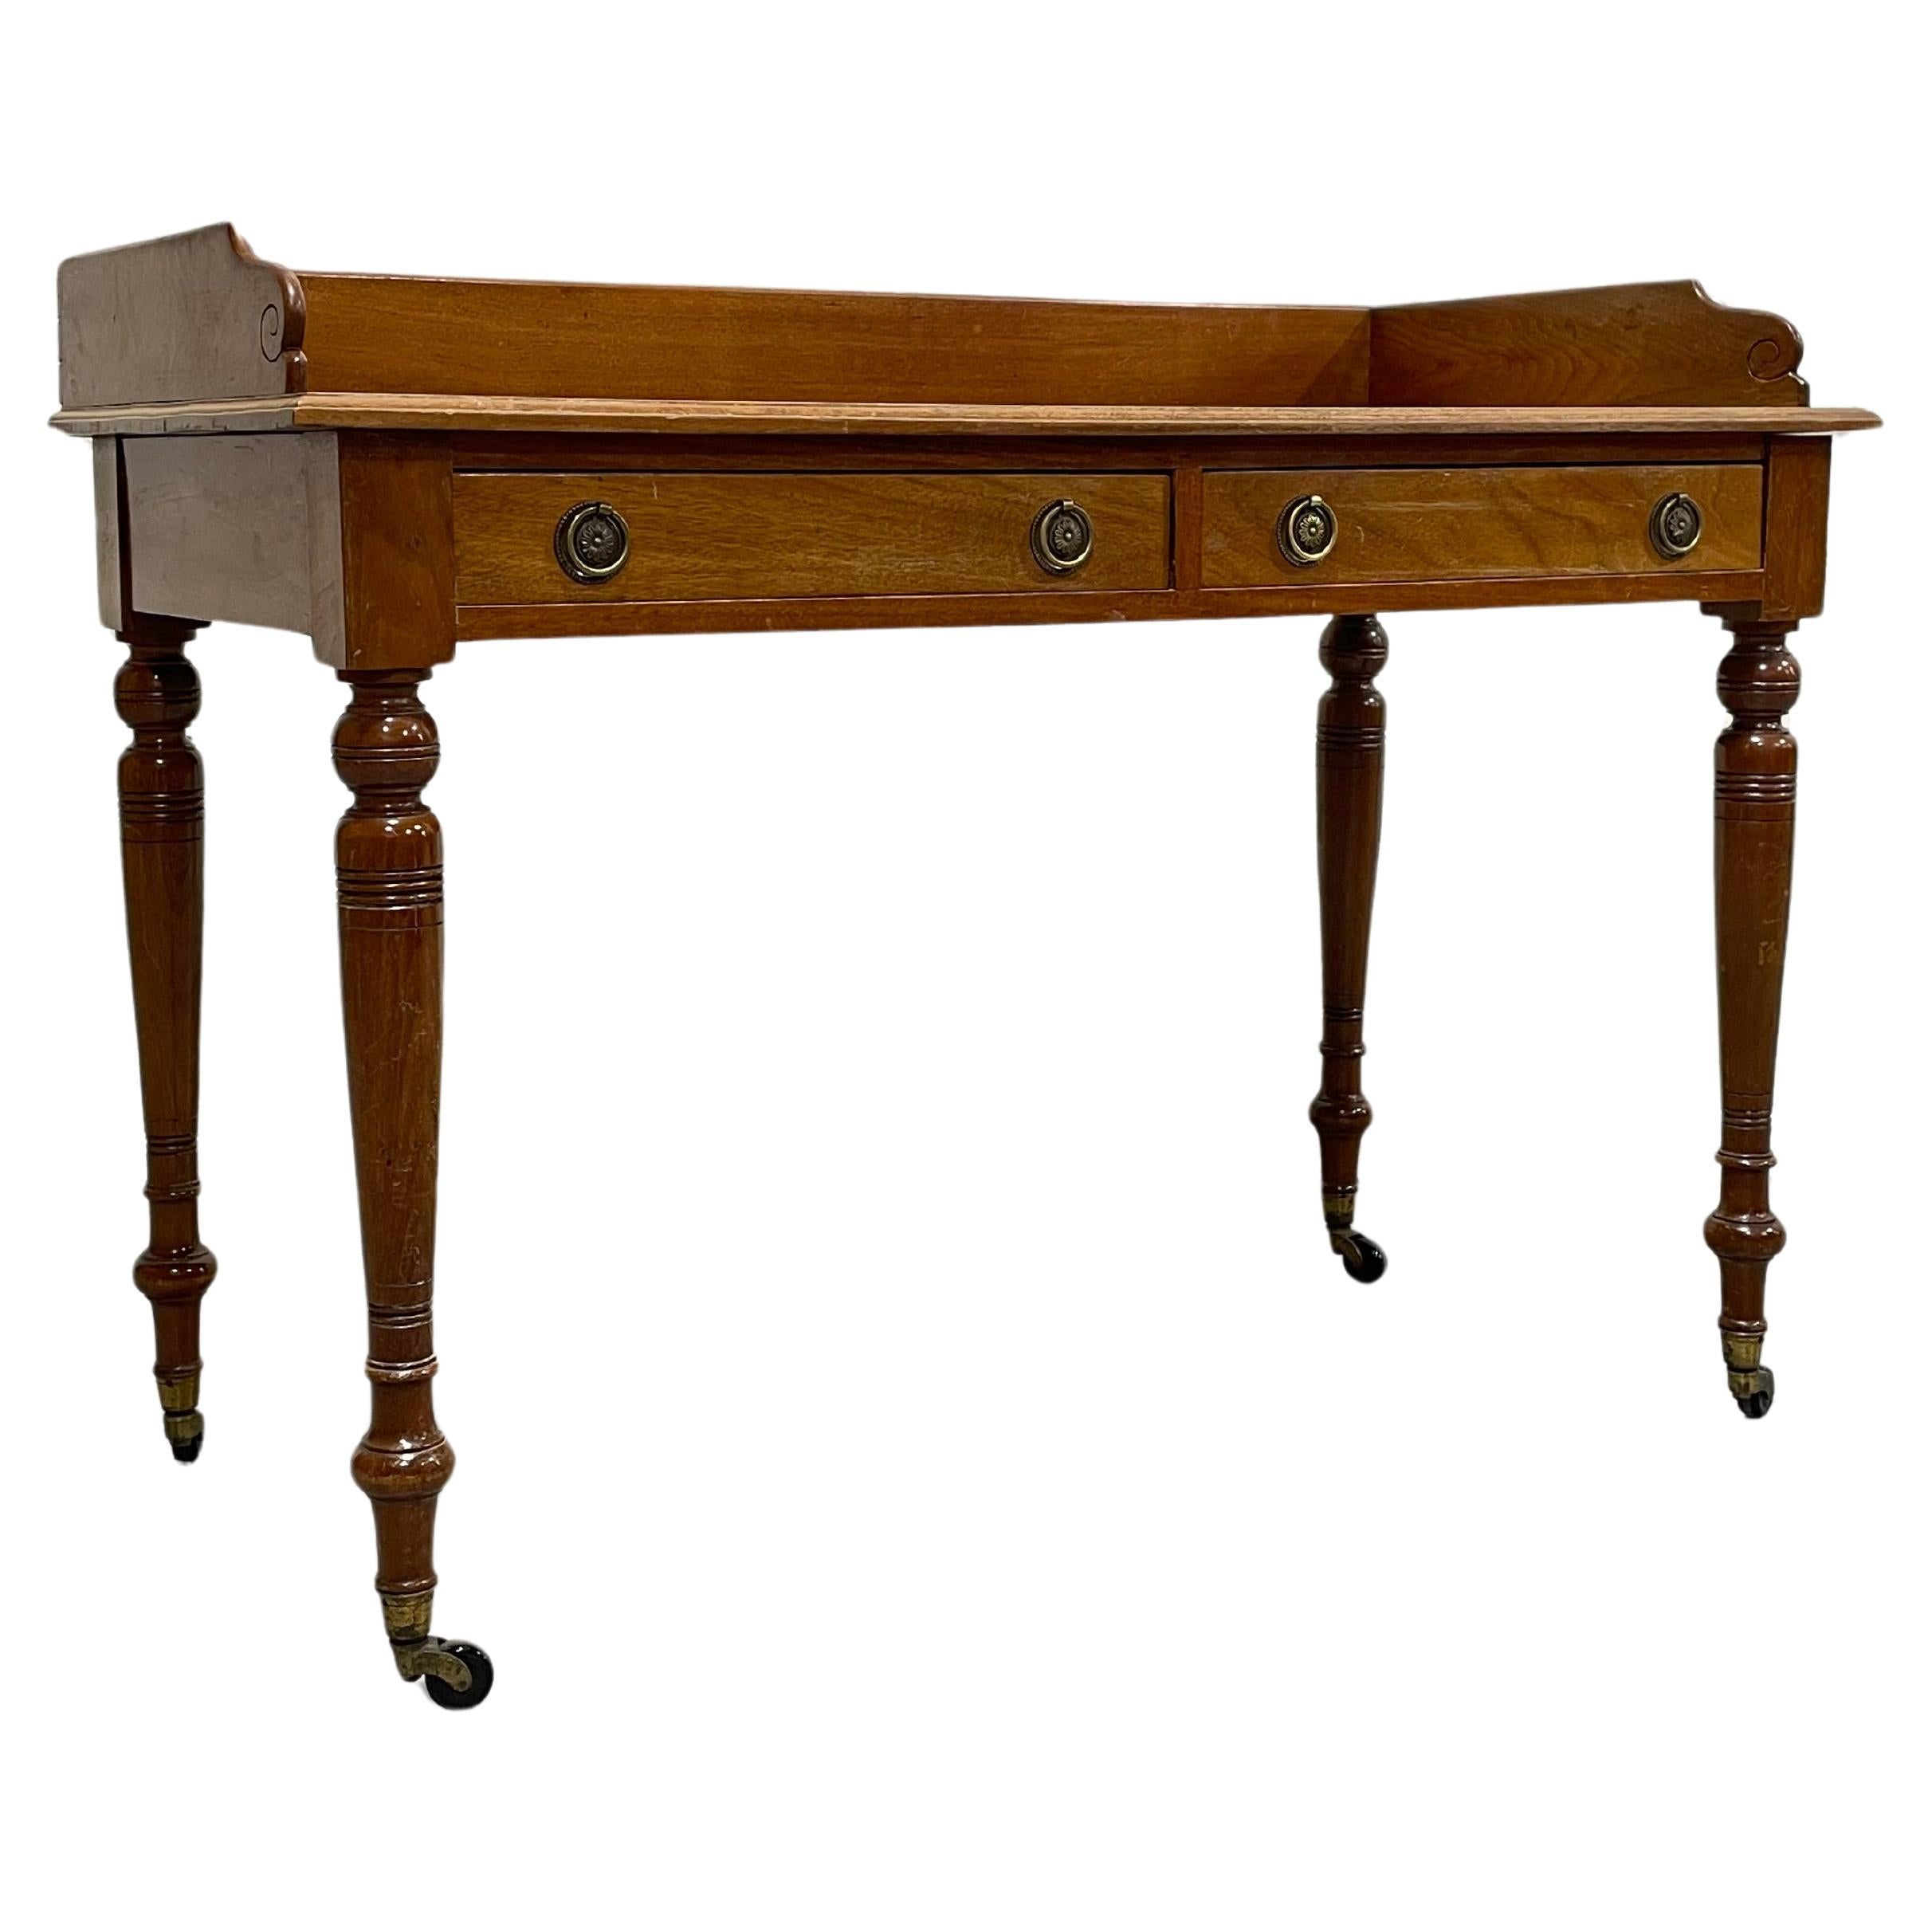 Magnifique table à écrire ou serveur ancien, avec pieds tournés sur roulettes, c. 1890. Deux tiroirs avec de jolies poignées, un plateau en cuir gaufré doré et d'intéressantes roulettes d'époque. Parfait petit bureau d'écriture qui peut facilement